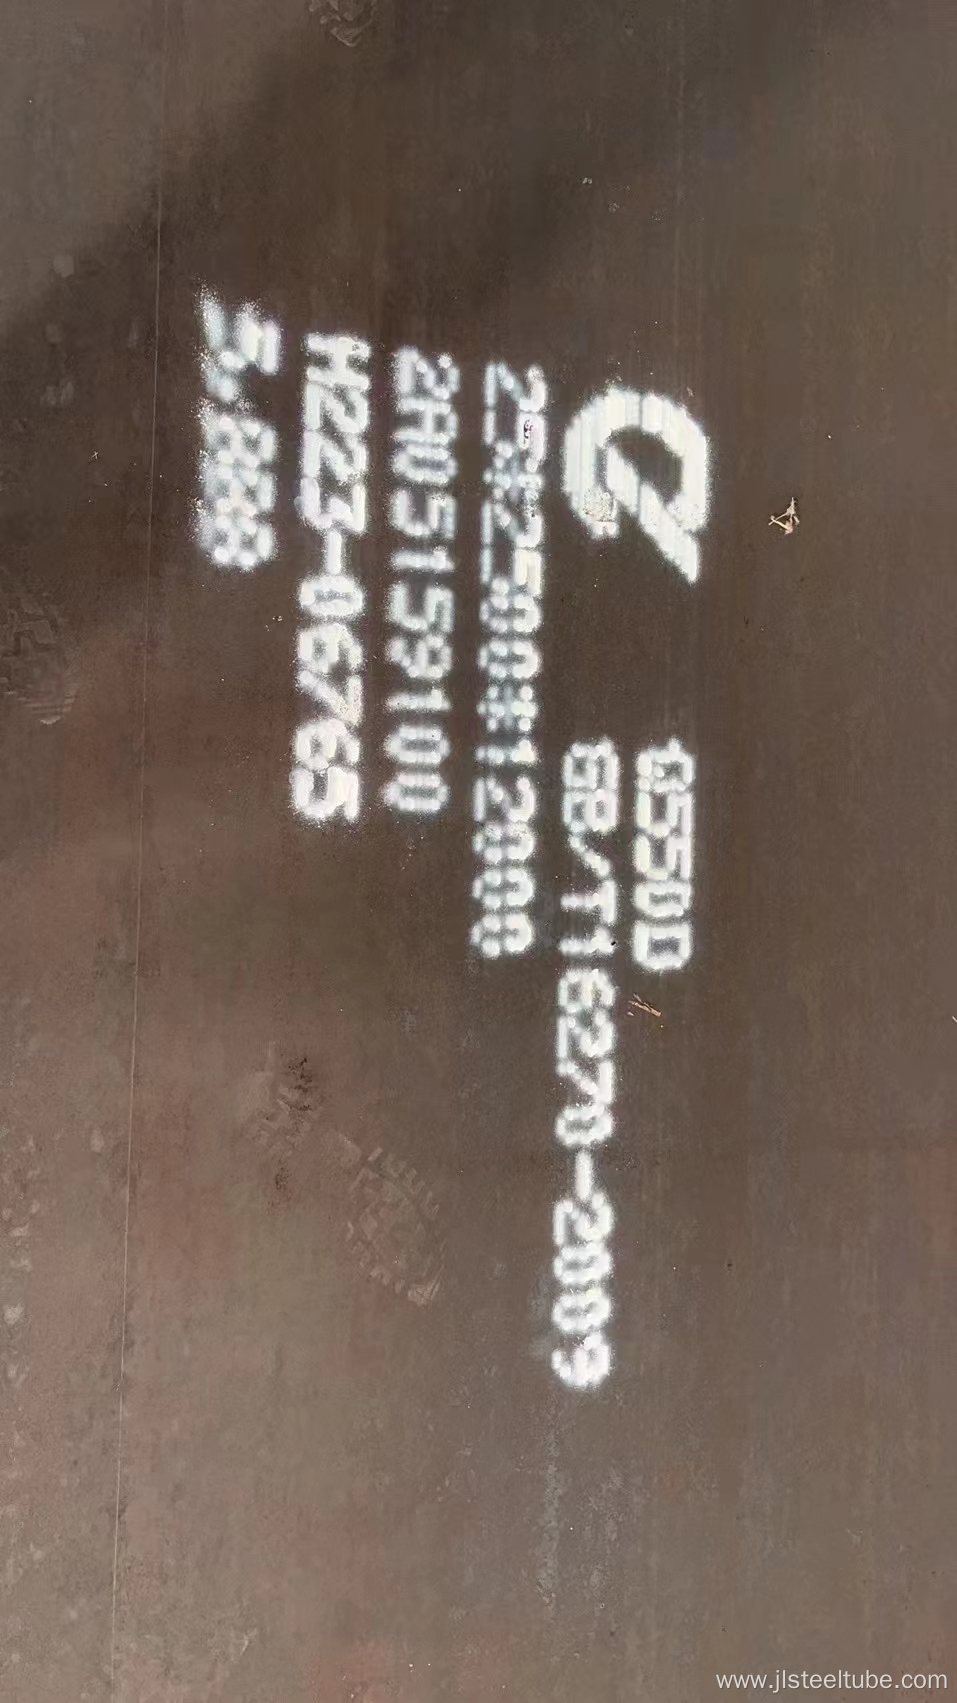 SA514 GR.J Pressure Vessel Steel Plate